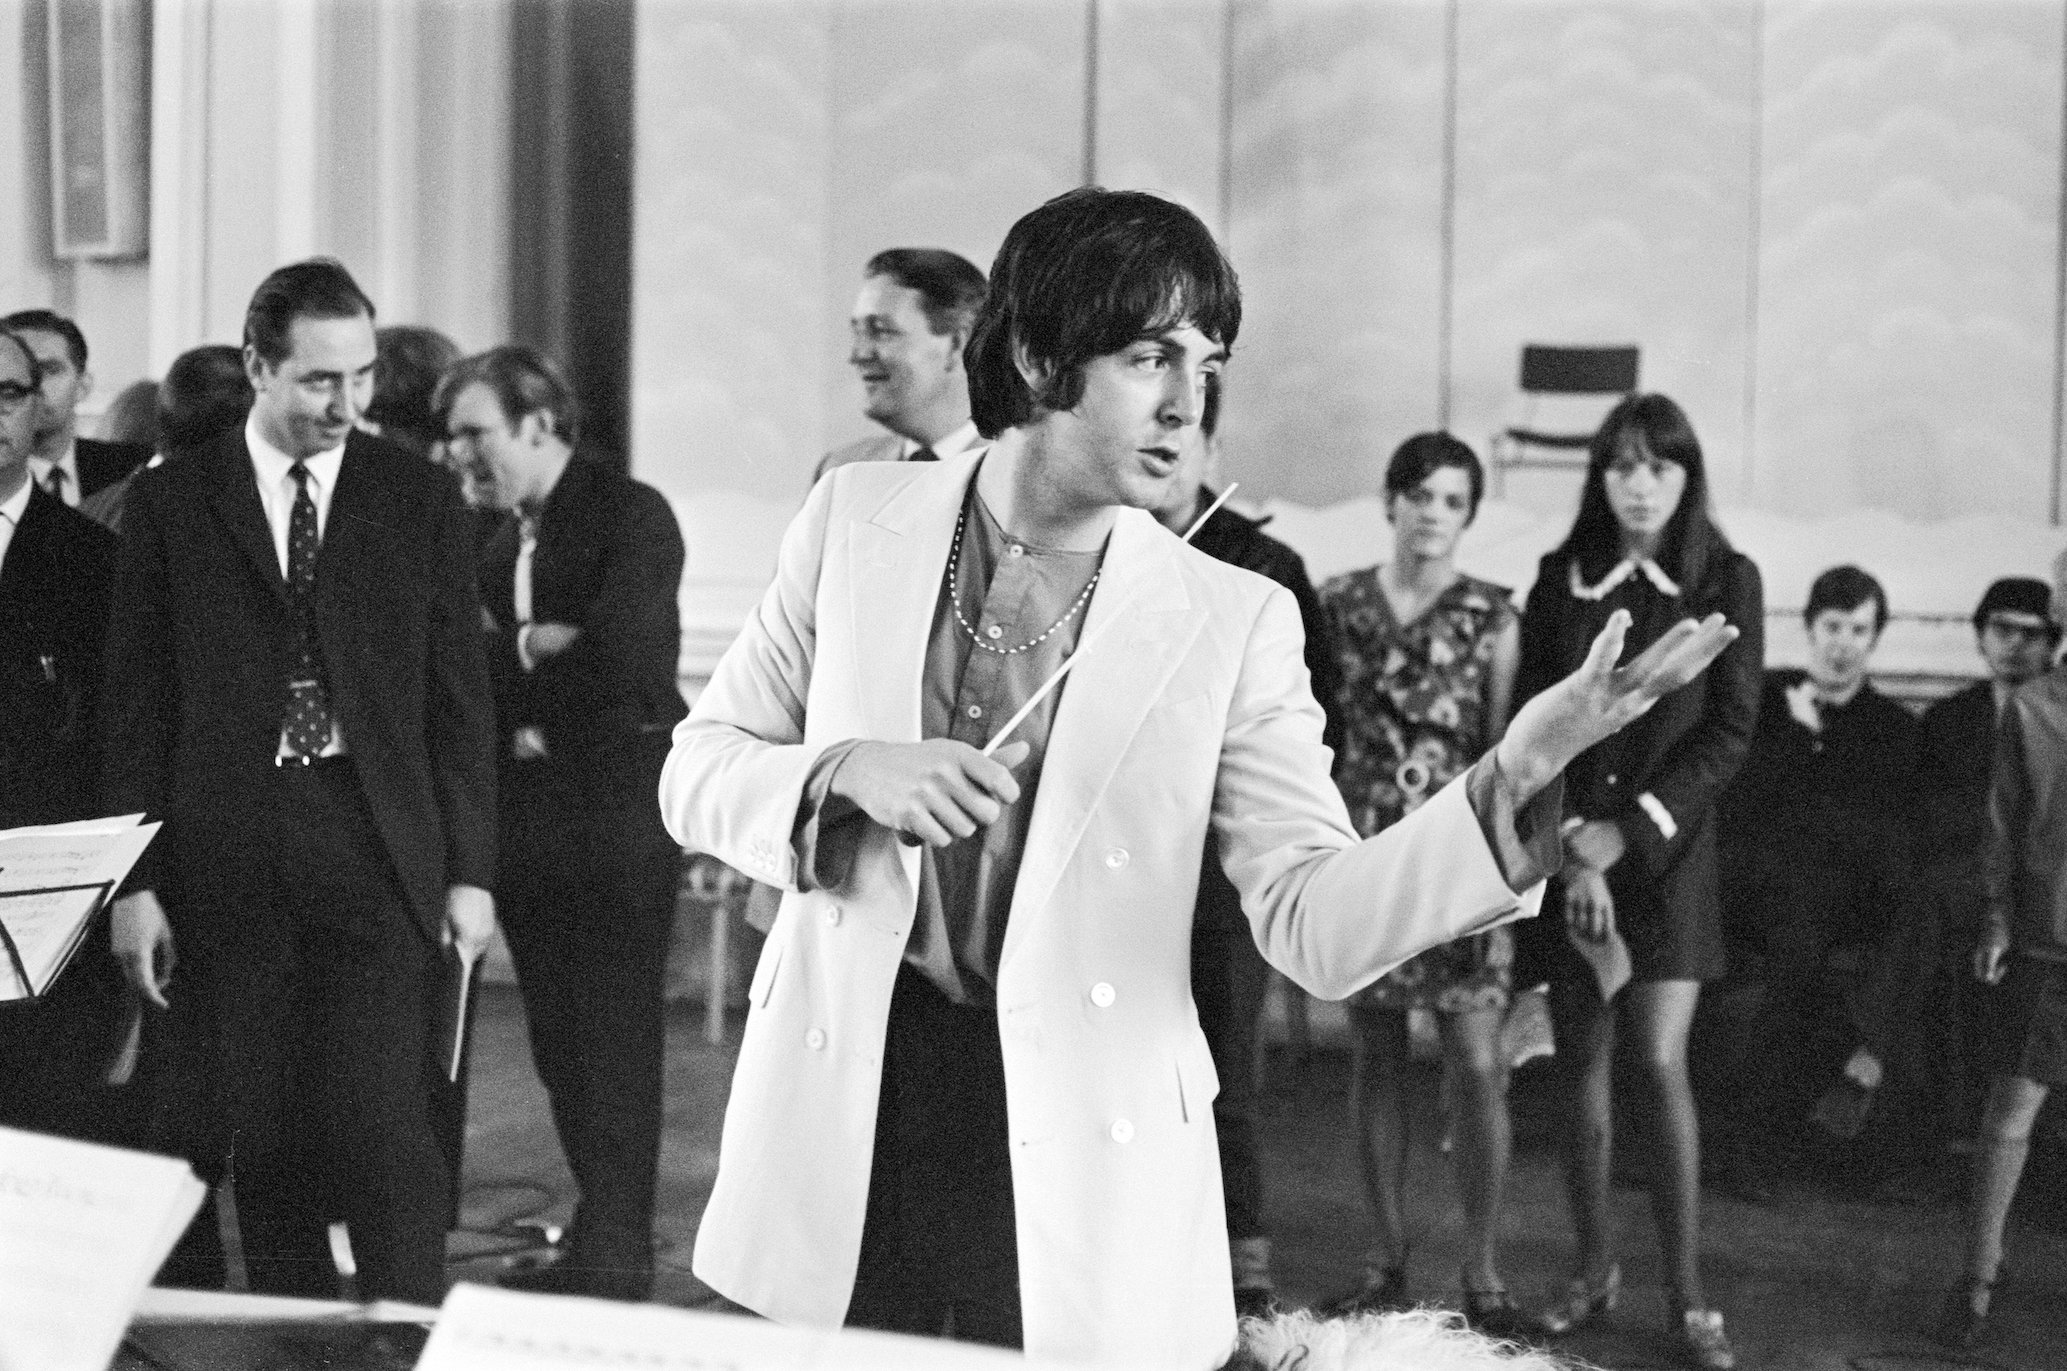 Der Beatles-Song, von dem Paul McCartney sagte, dass er das „Elvis Echo“ perfektionierte